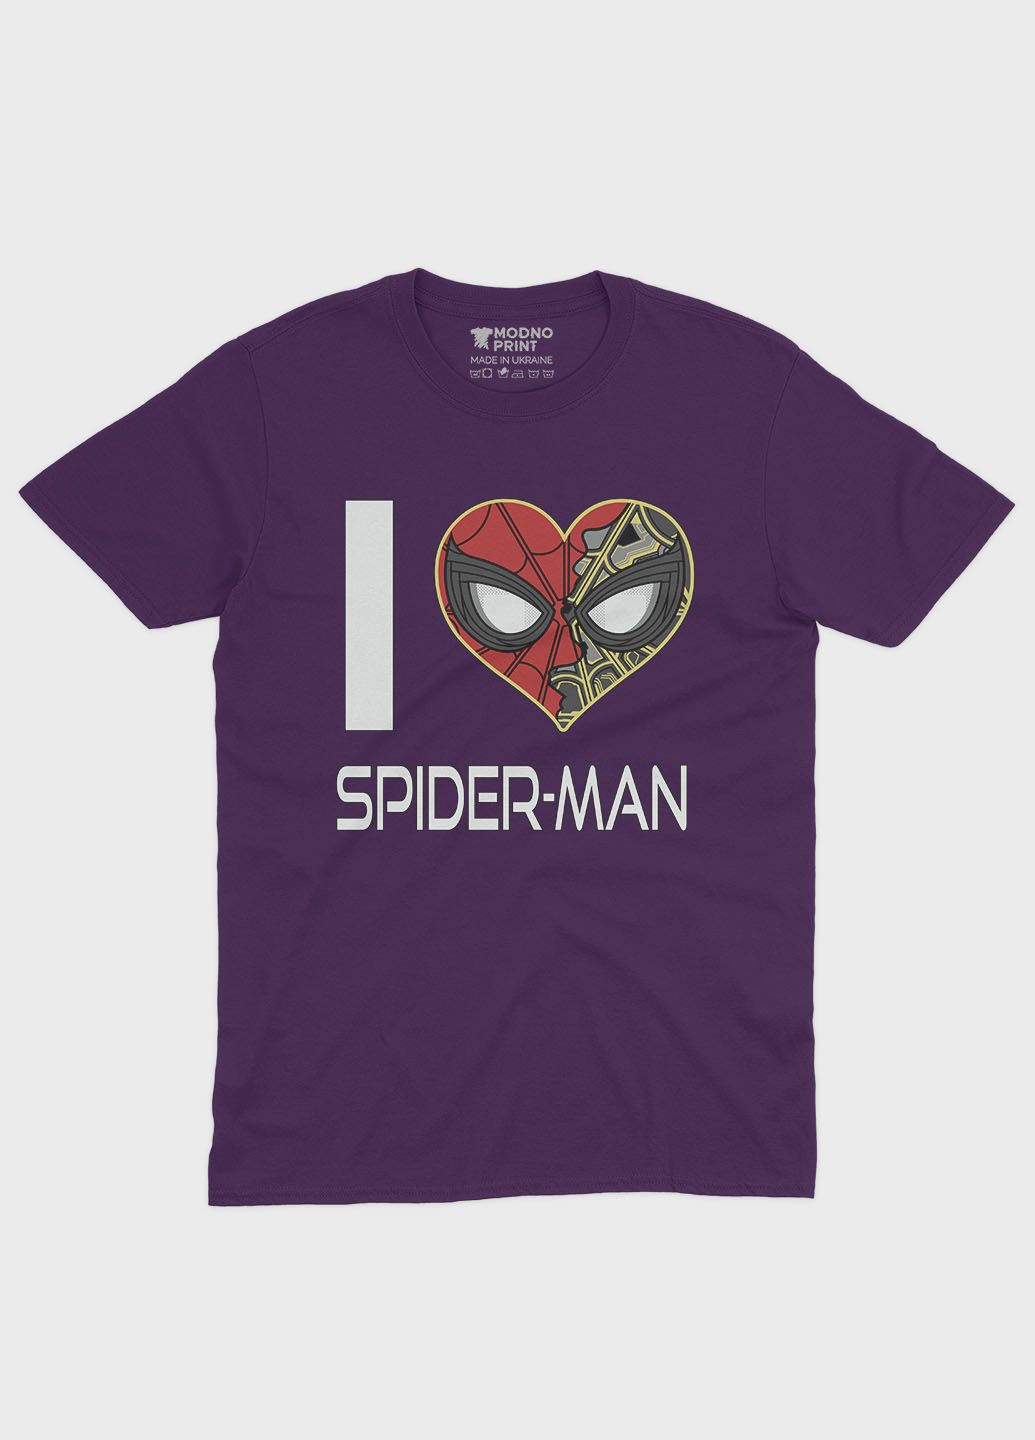 Фиолетовая демисезонная футболка для девочки с принтом супергероя - человек-паук (ts001-1-dby-006-014-091-g) Modno